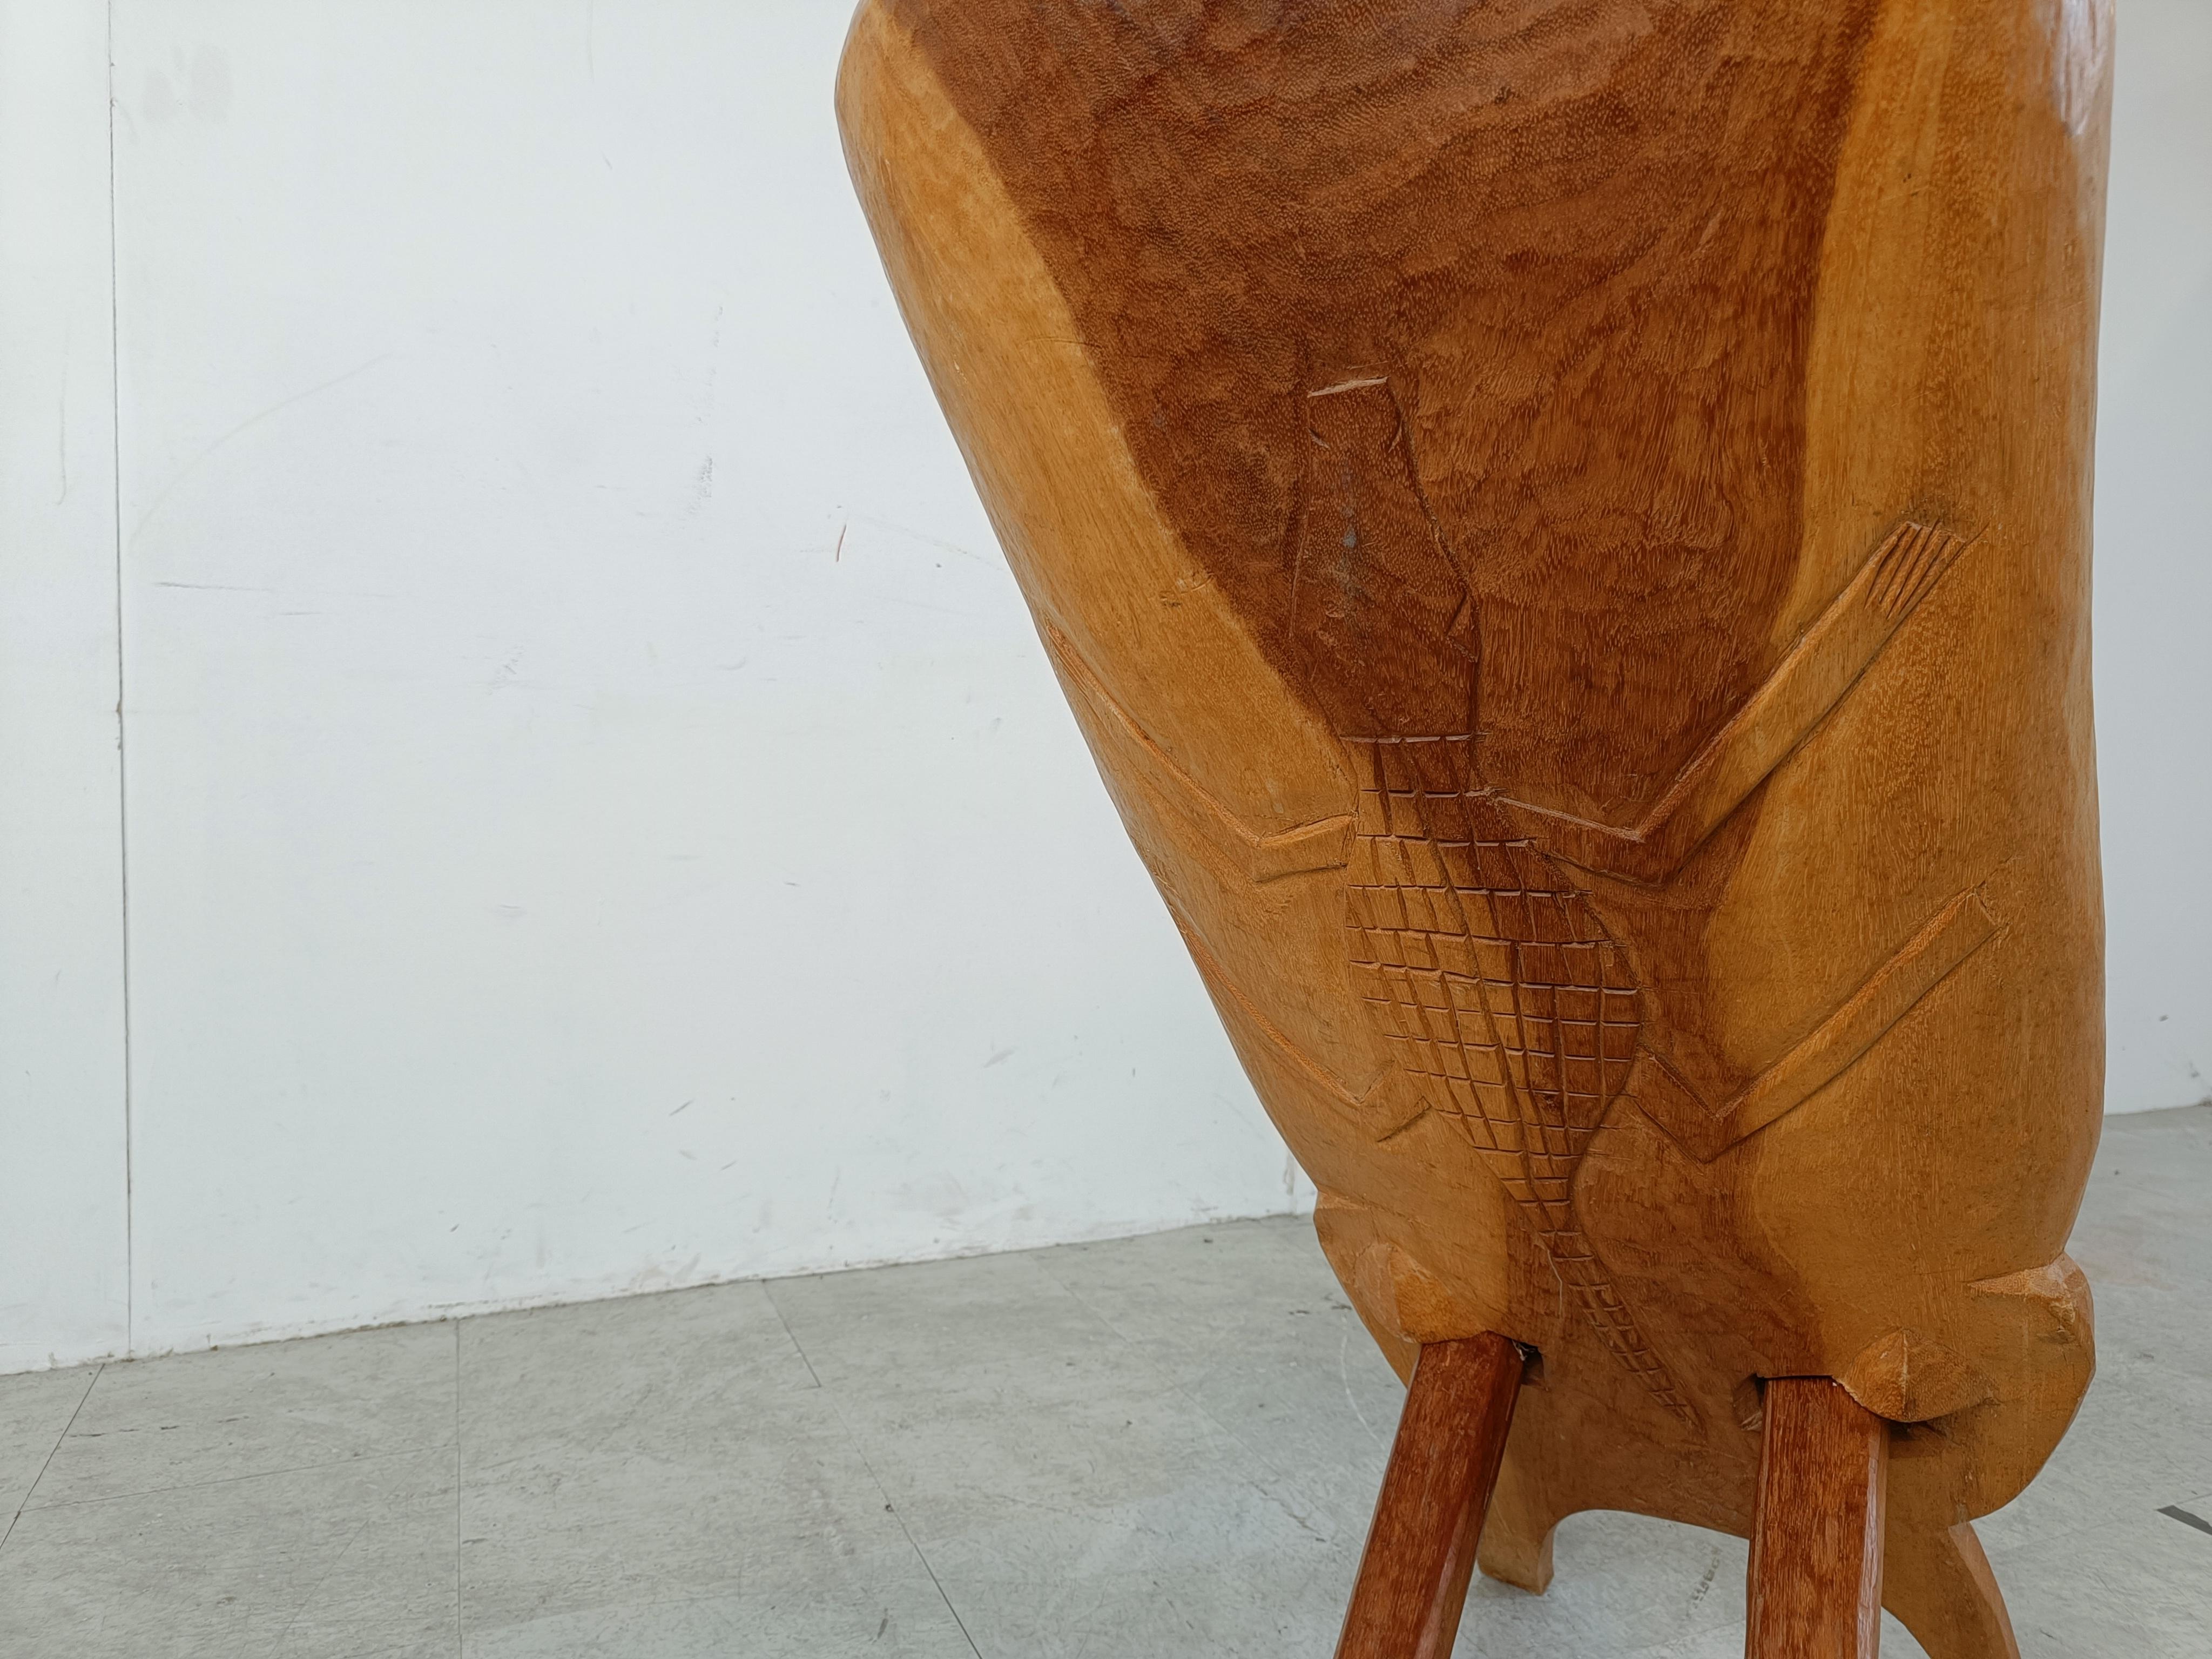 Traditionelle afrikanische Gebärstühle, die aus zwei ineinander greifenden Holzbrettern bestehen, die sorgfältig herausgeschnitzt wurden.

Wunderschöne natürliche Holzvasen.

Guter Zustand.

1960er Jahre - Afrika

Abmessungen:
Höhe: